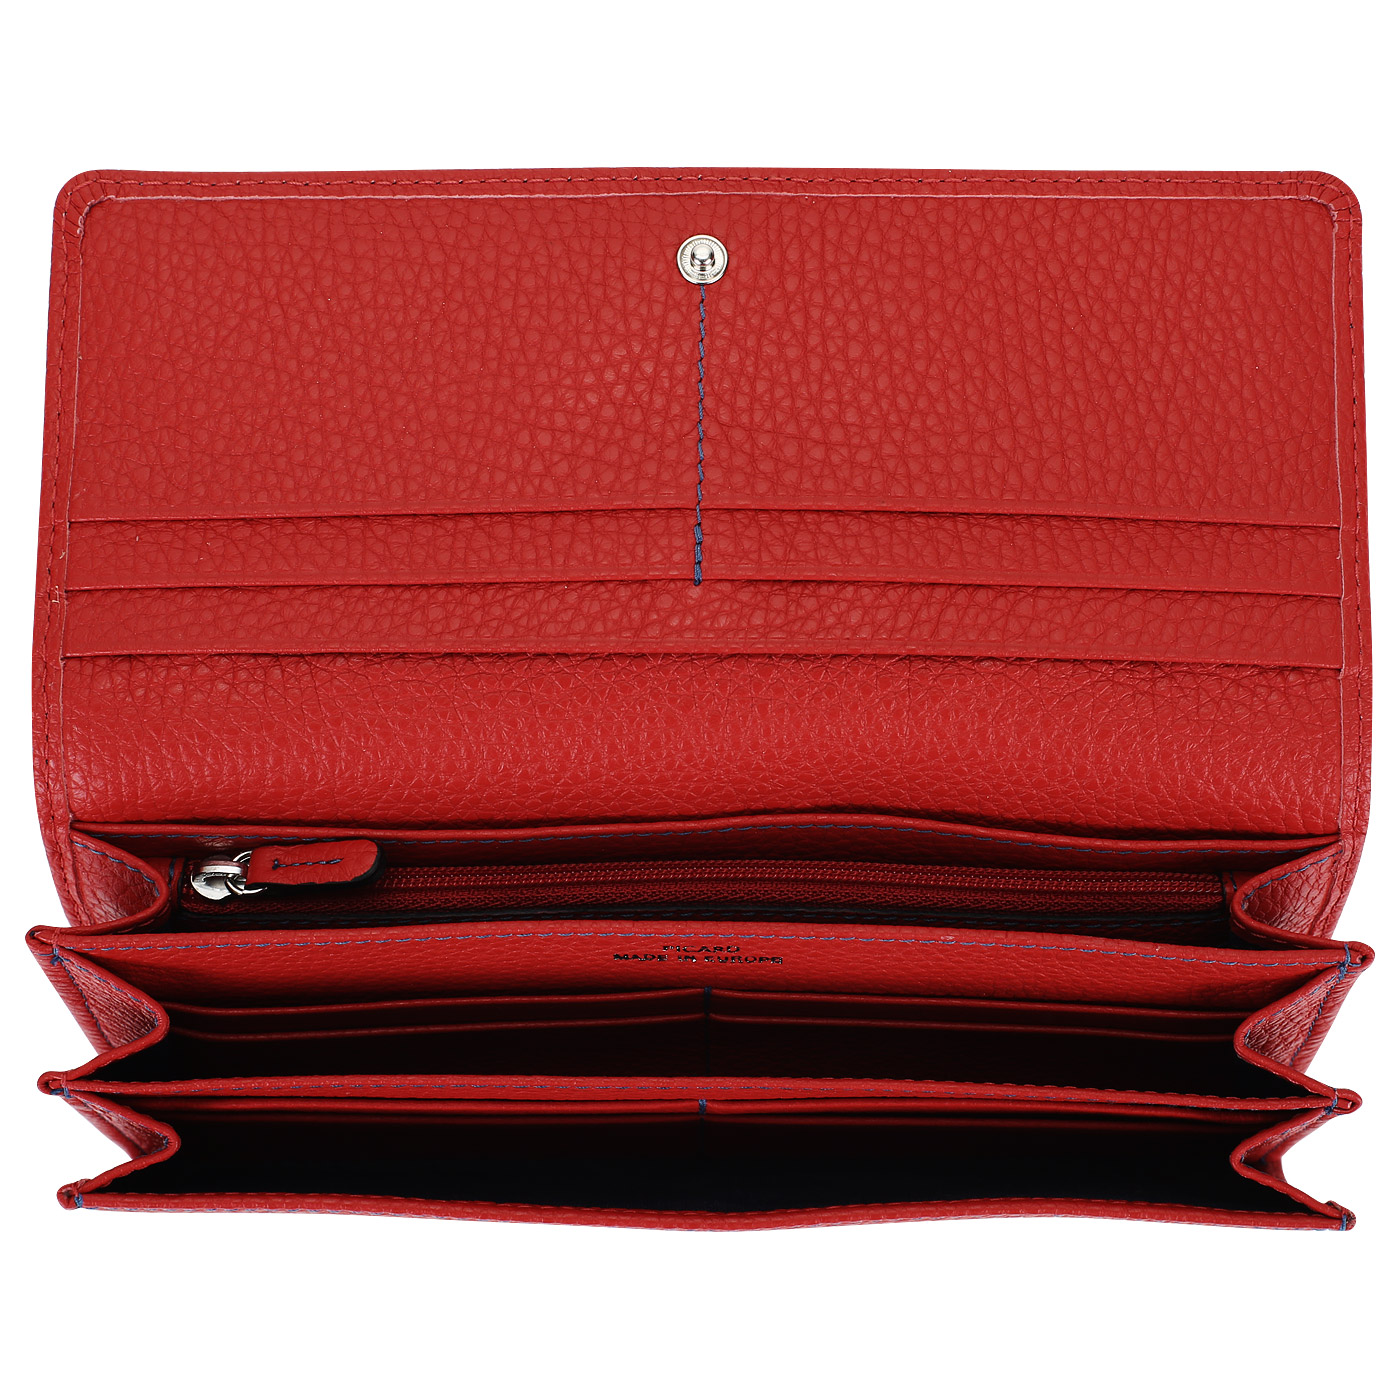 Красный кожаный кошелек Picard Dakota 1